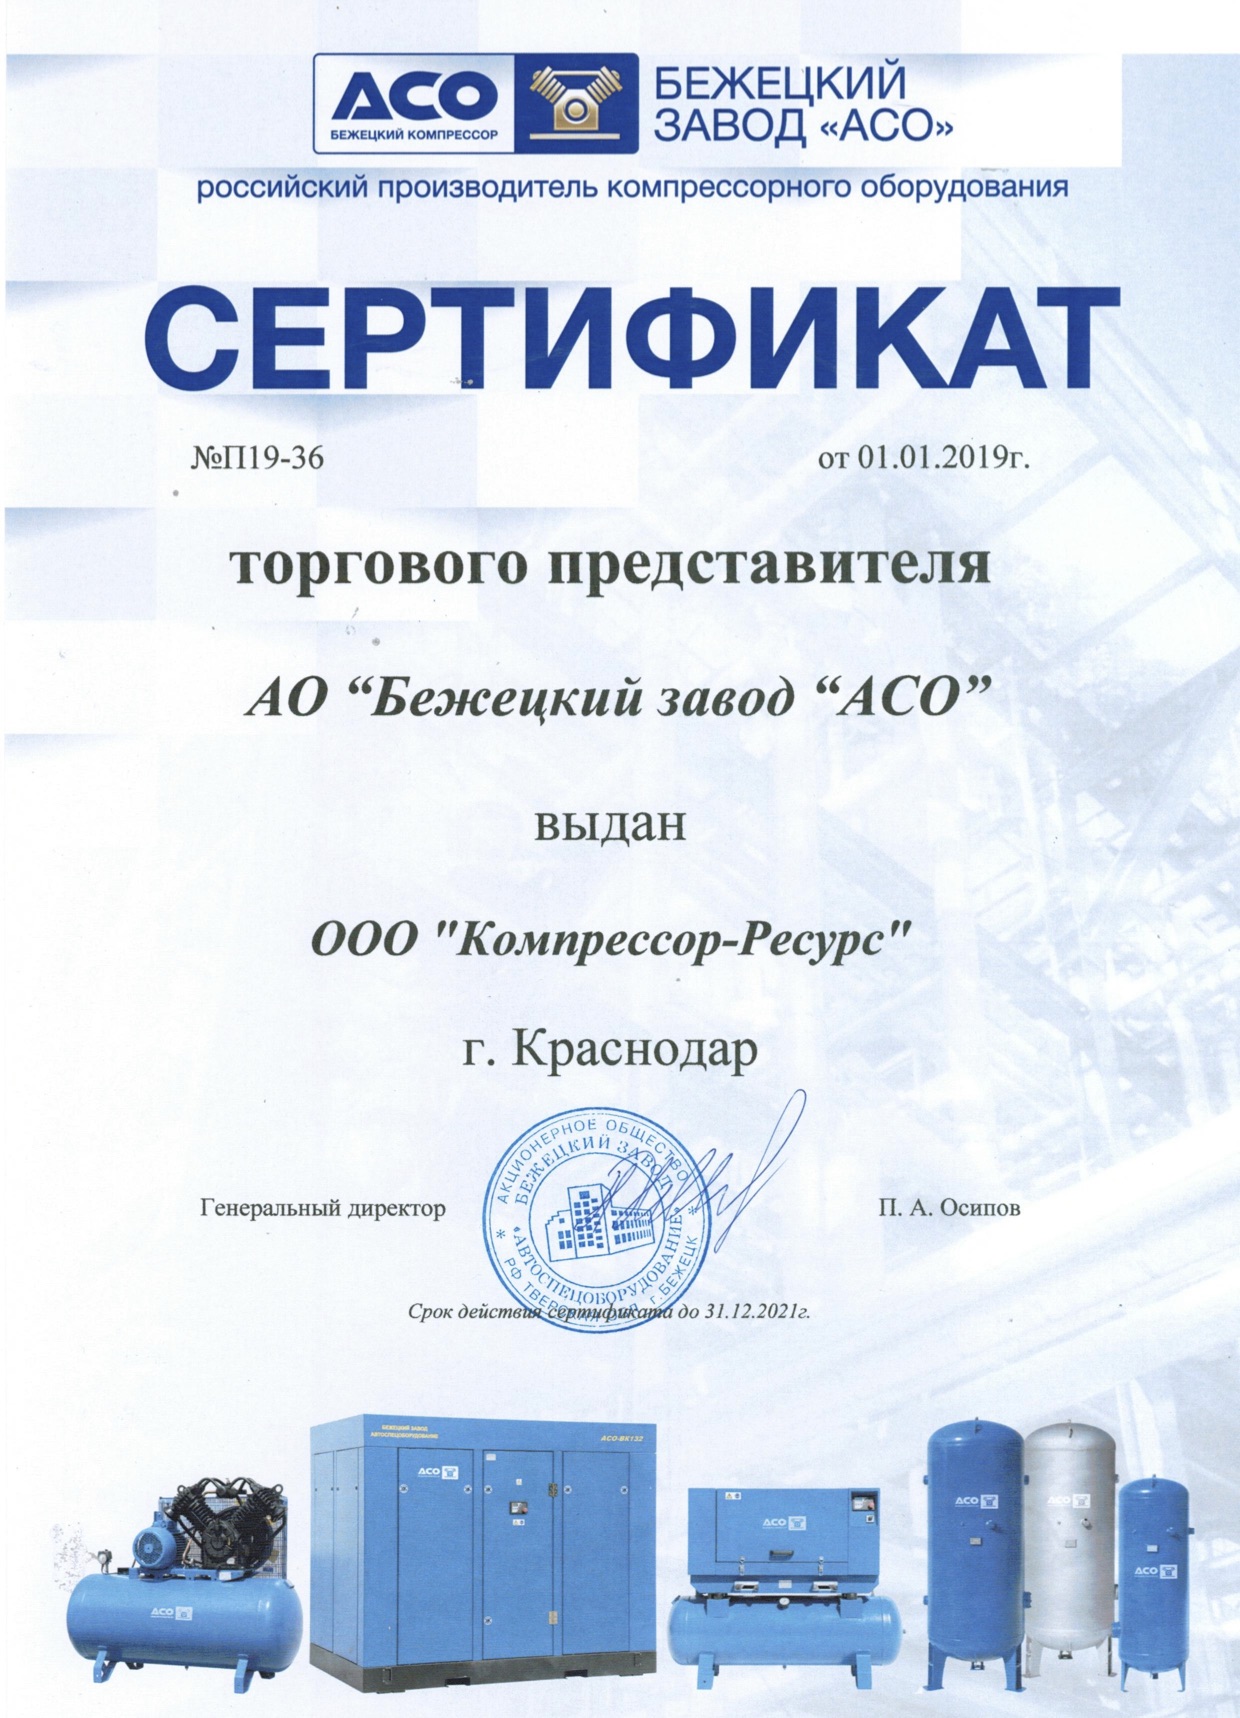 ООО "Компрессор-ресурс" является официальным представителем АСО "Бежецк"